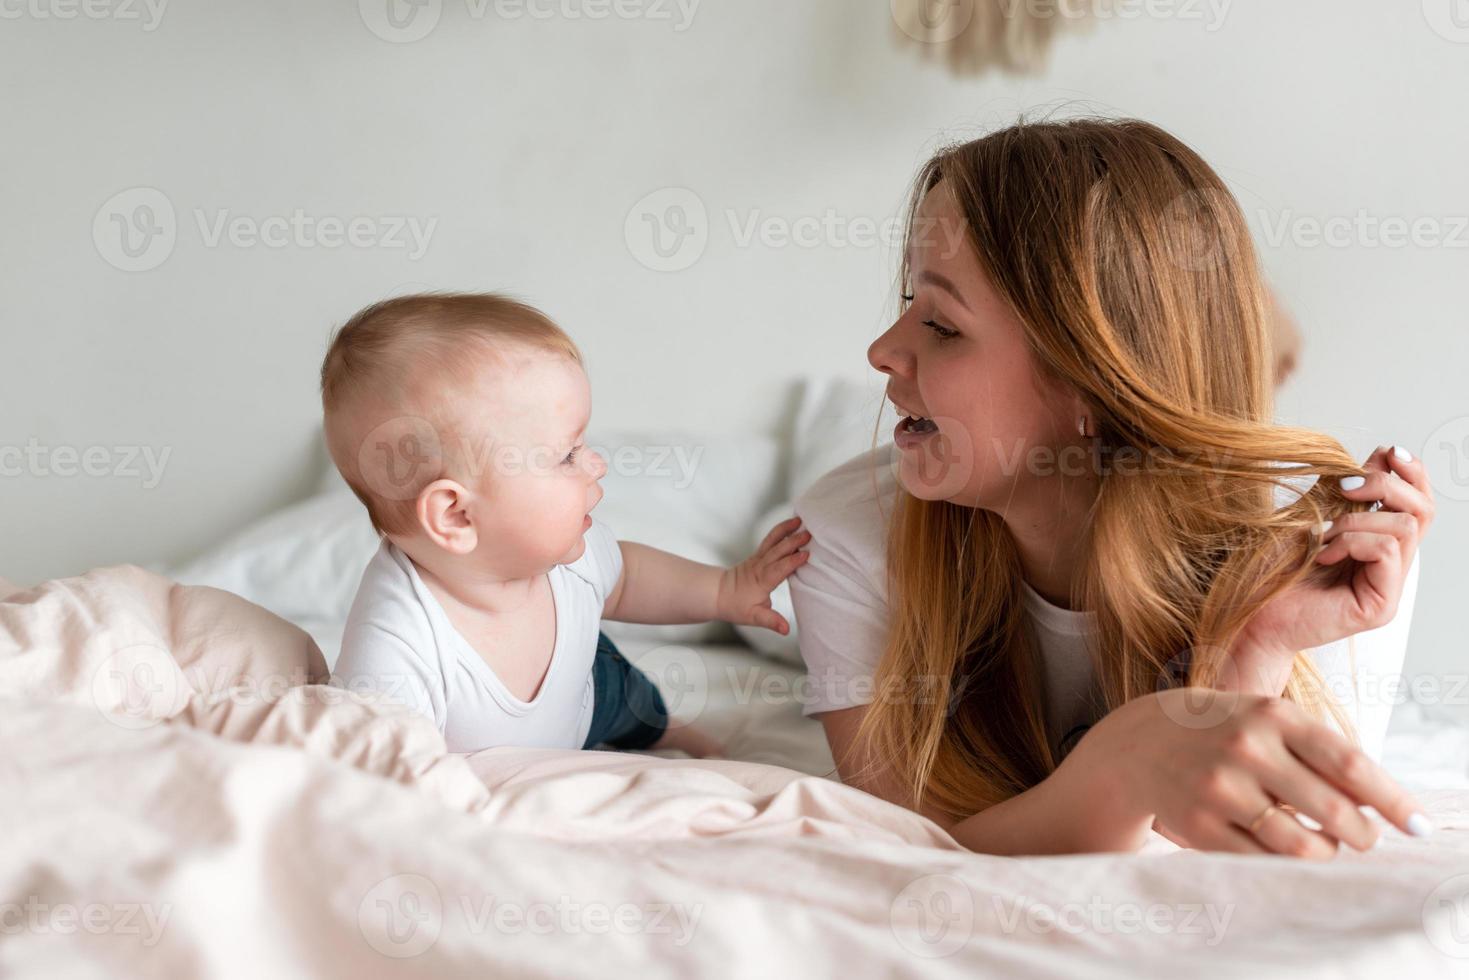 bella, sorridente mamma e figlia sdraiata sul letto, divertendosi foto